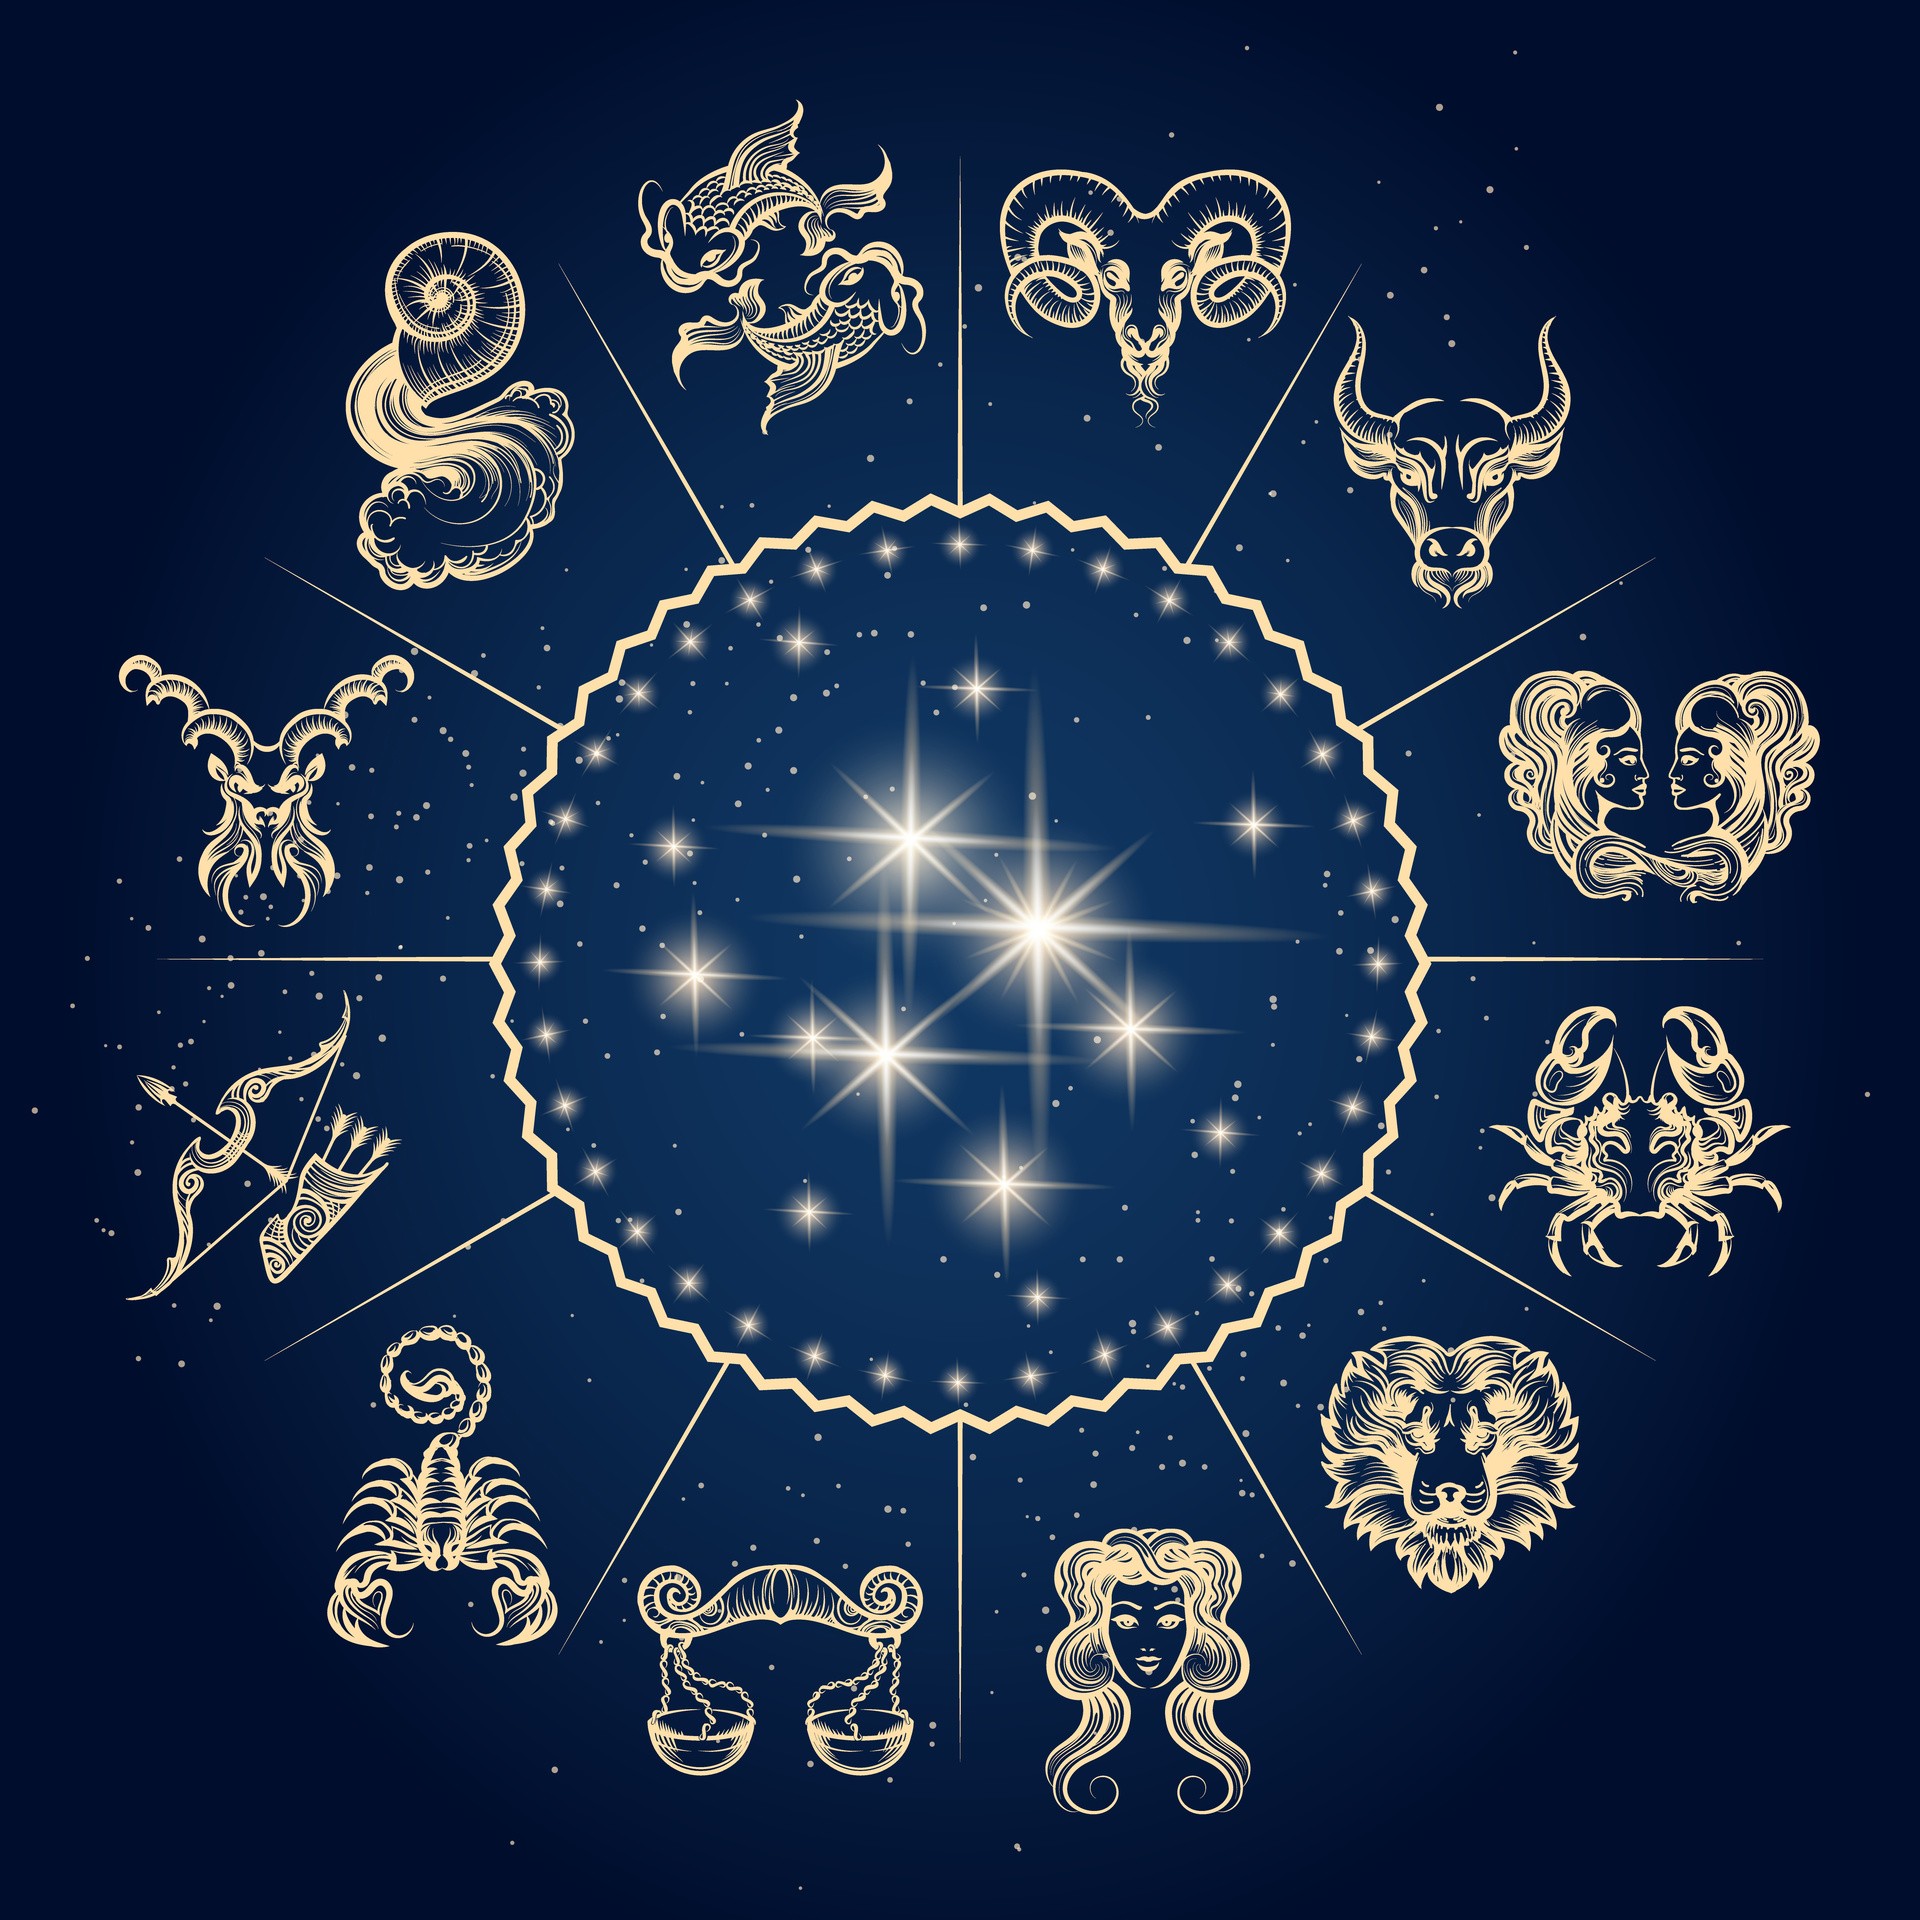 horoskop-miesi-czny-na-wrzesie-2020-te-znaki-zodiaku-odkryj-pasje-i